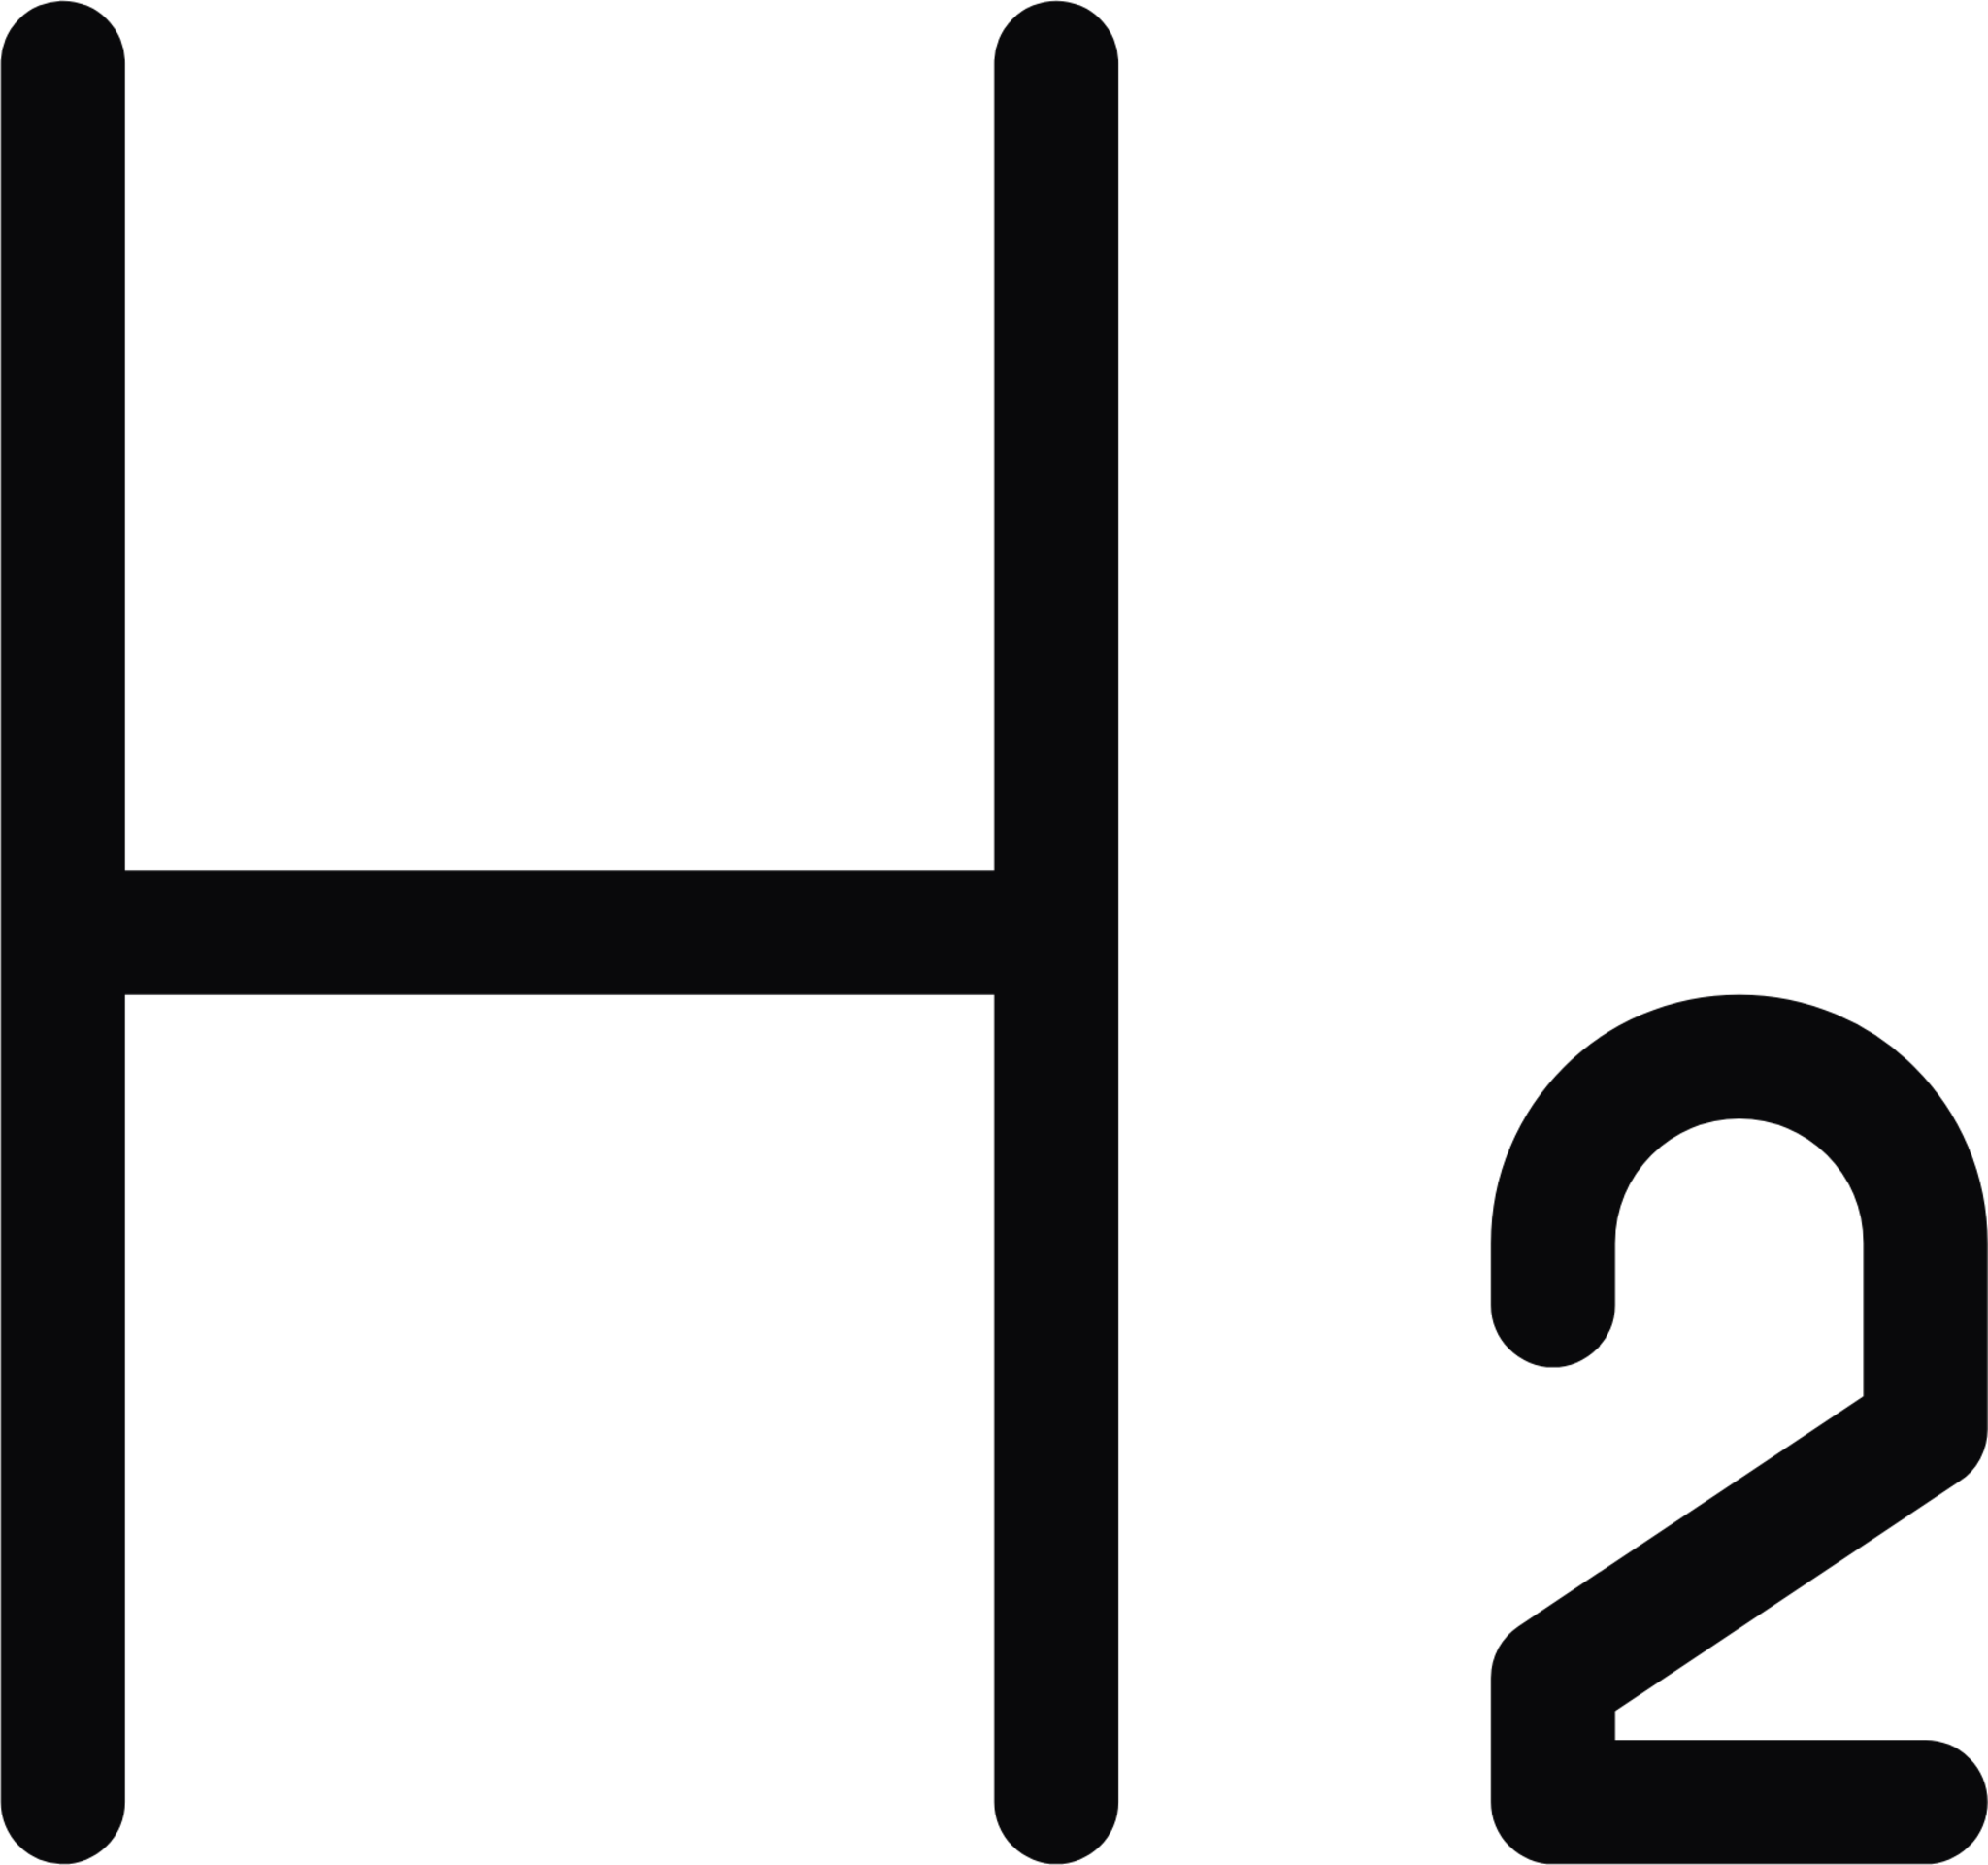 h2 icon